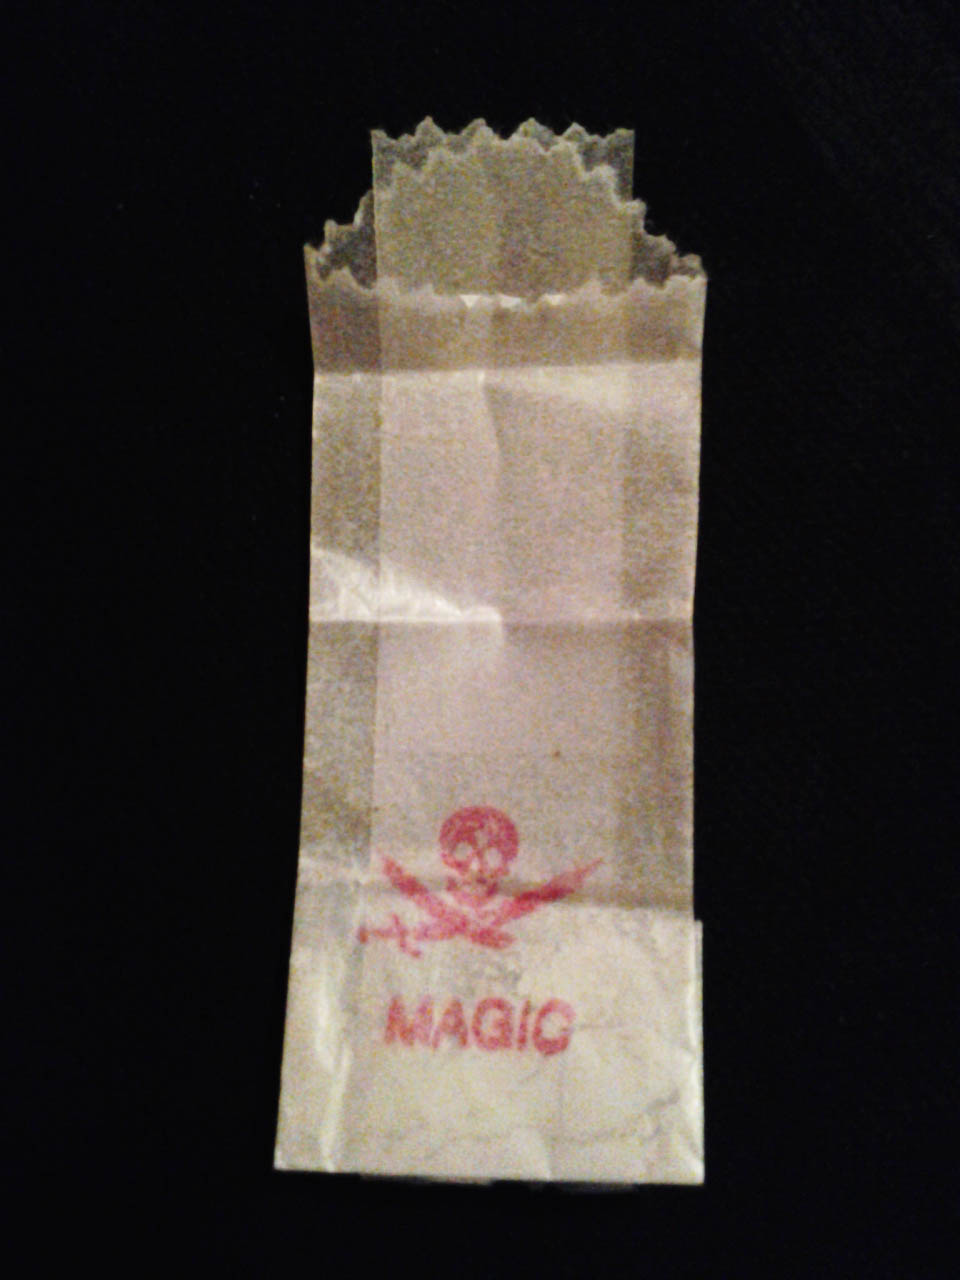 magic-bag.jpg